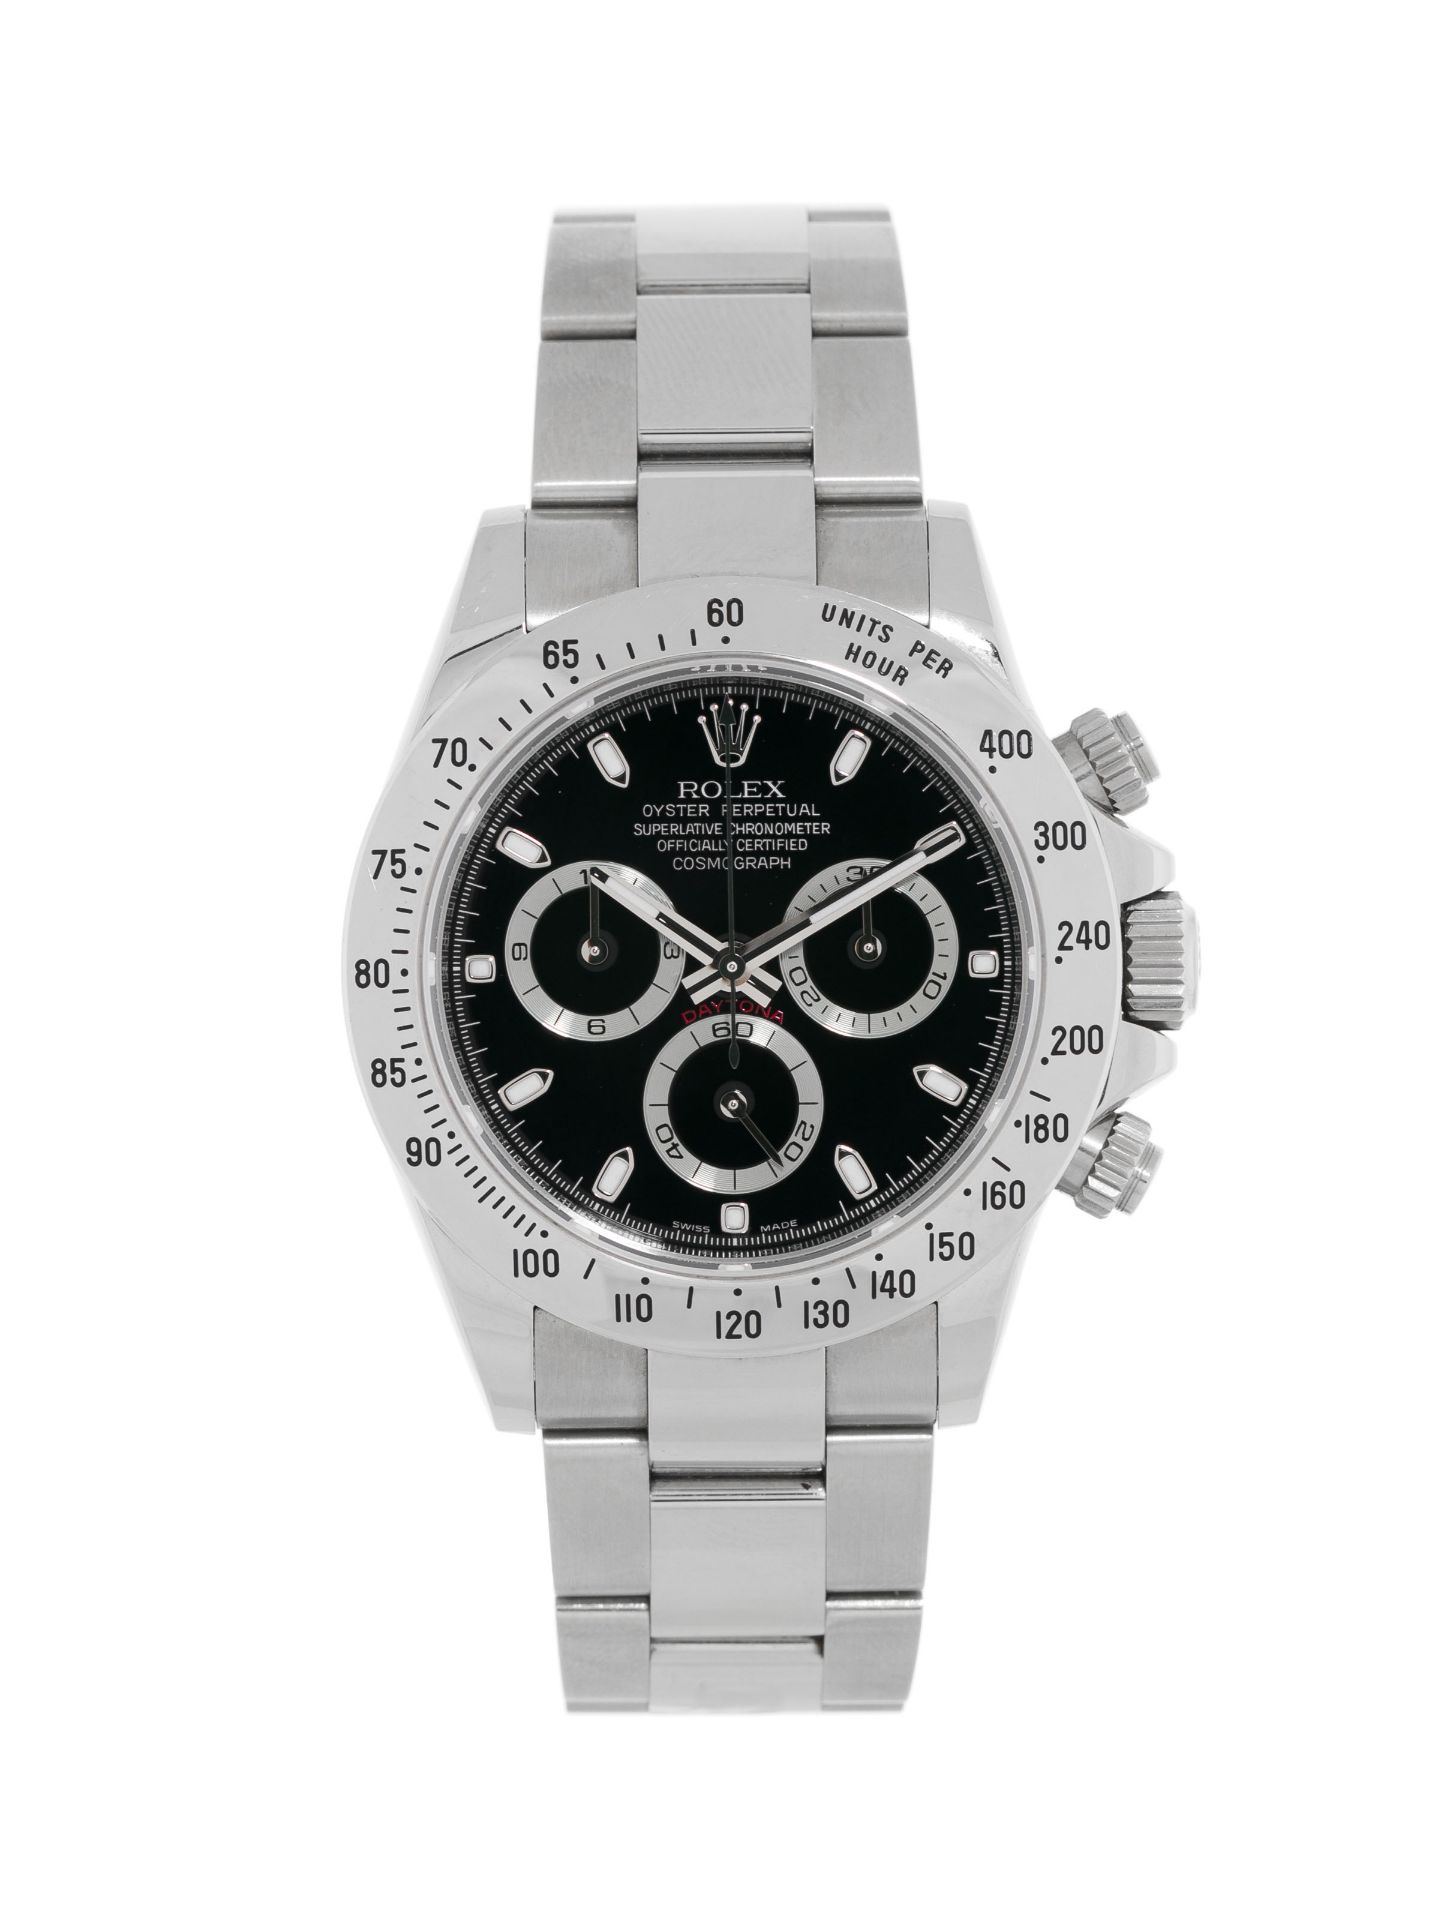 Rolex, Daytona, réf. 116520/2100, montre-bracelet chronographe en acier, circa 2008